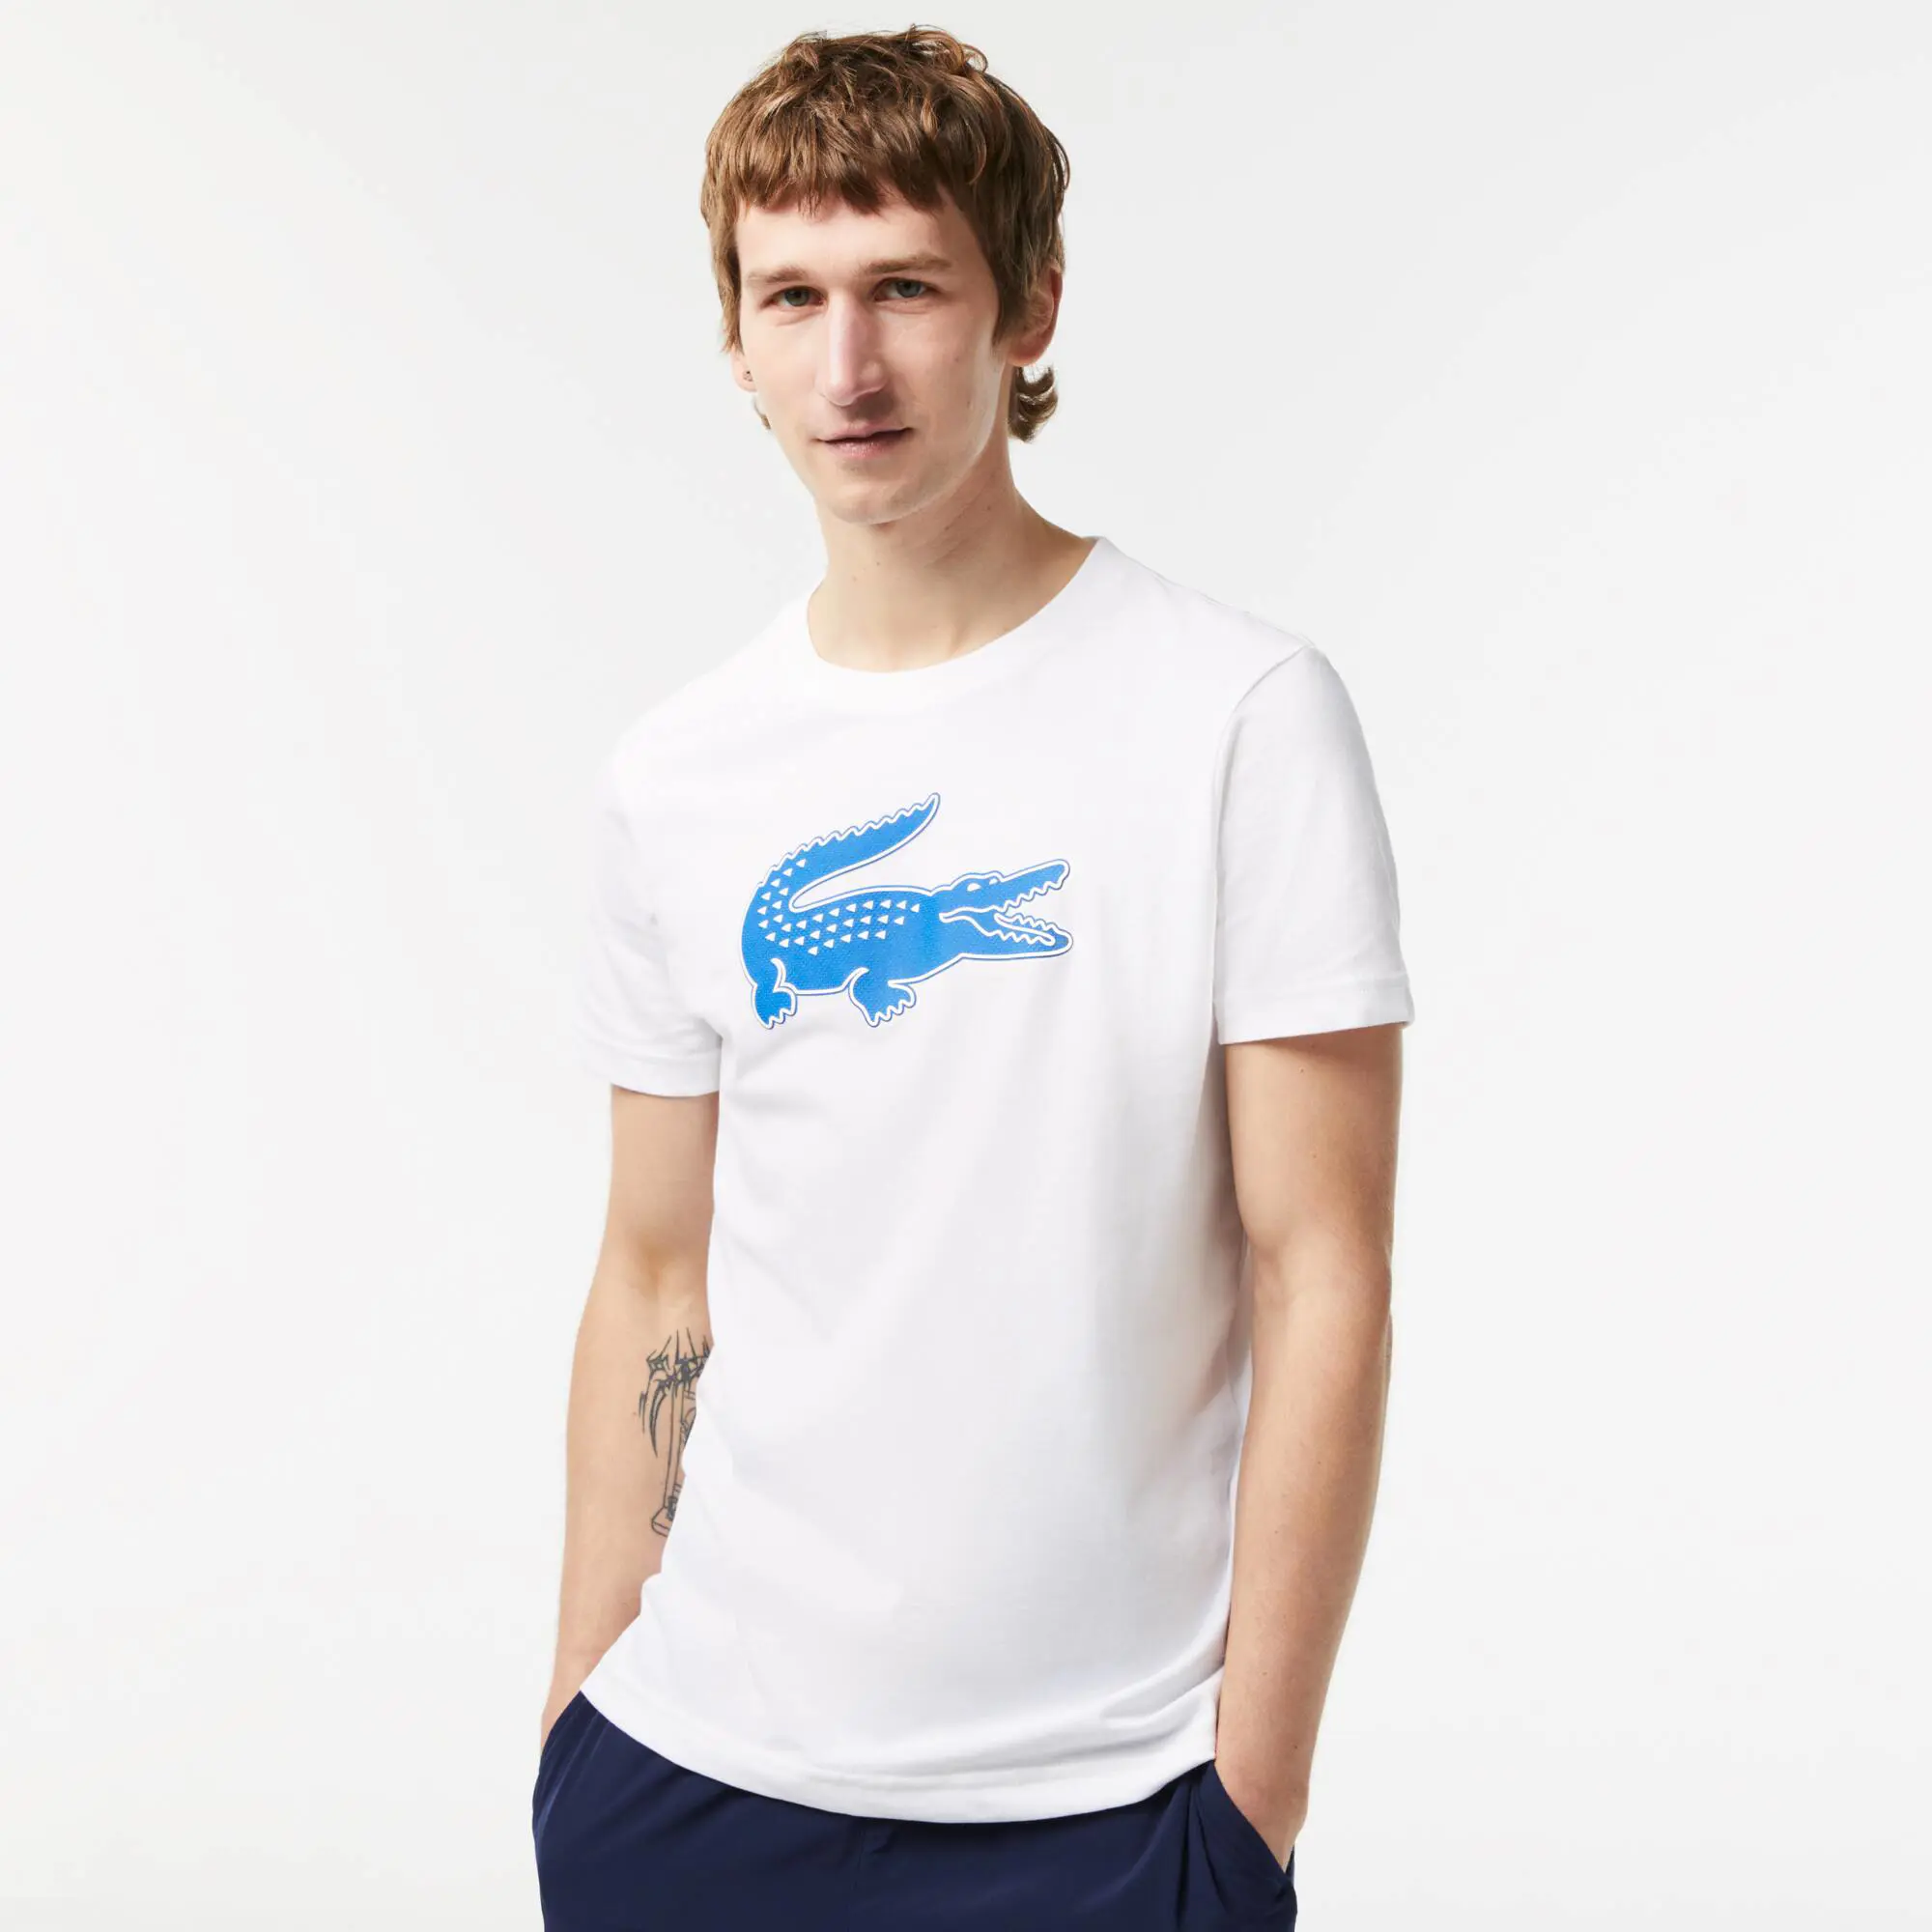 Lacoste T-shirt Lacoste SPORT en jersey respirant imprimé crocodile 3D. 1